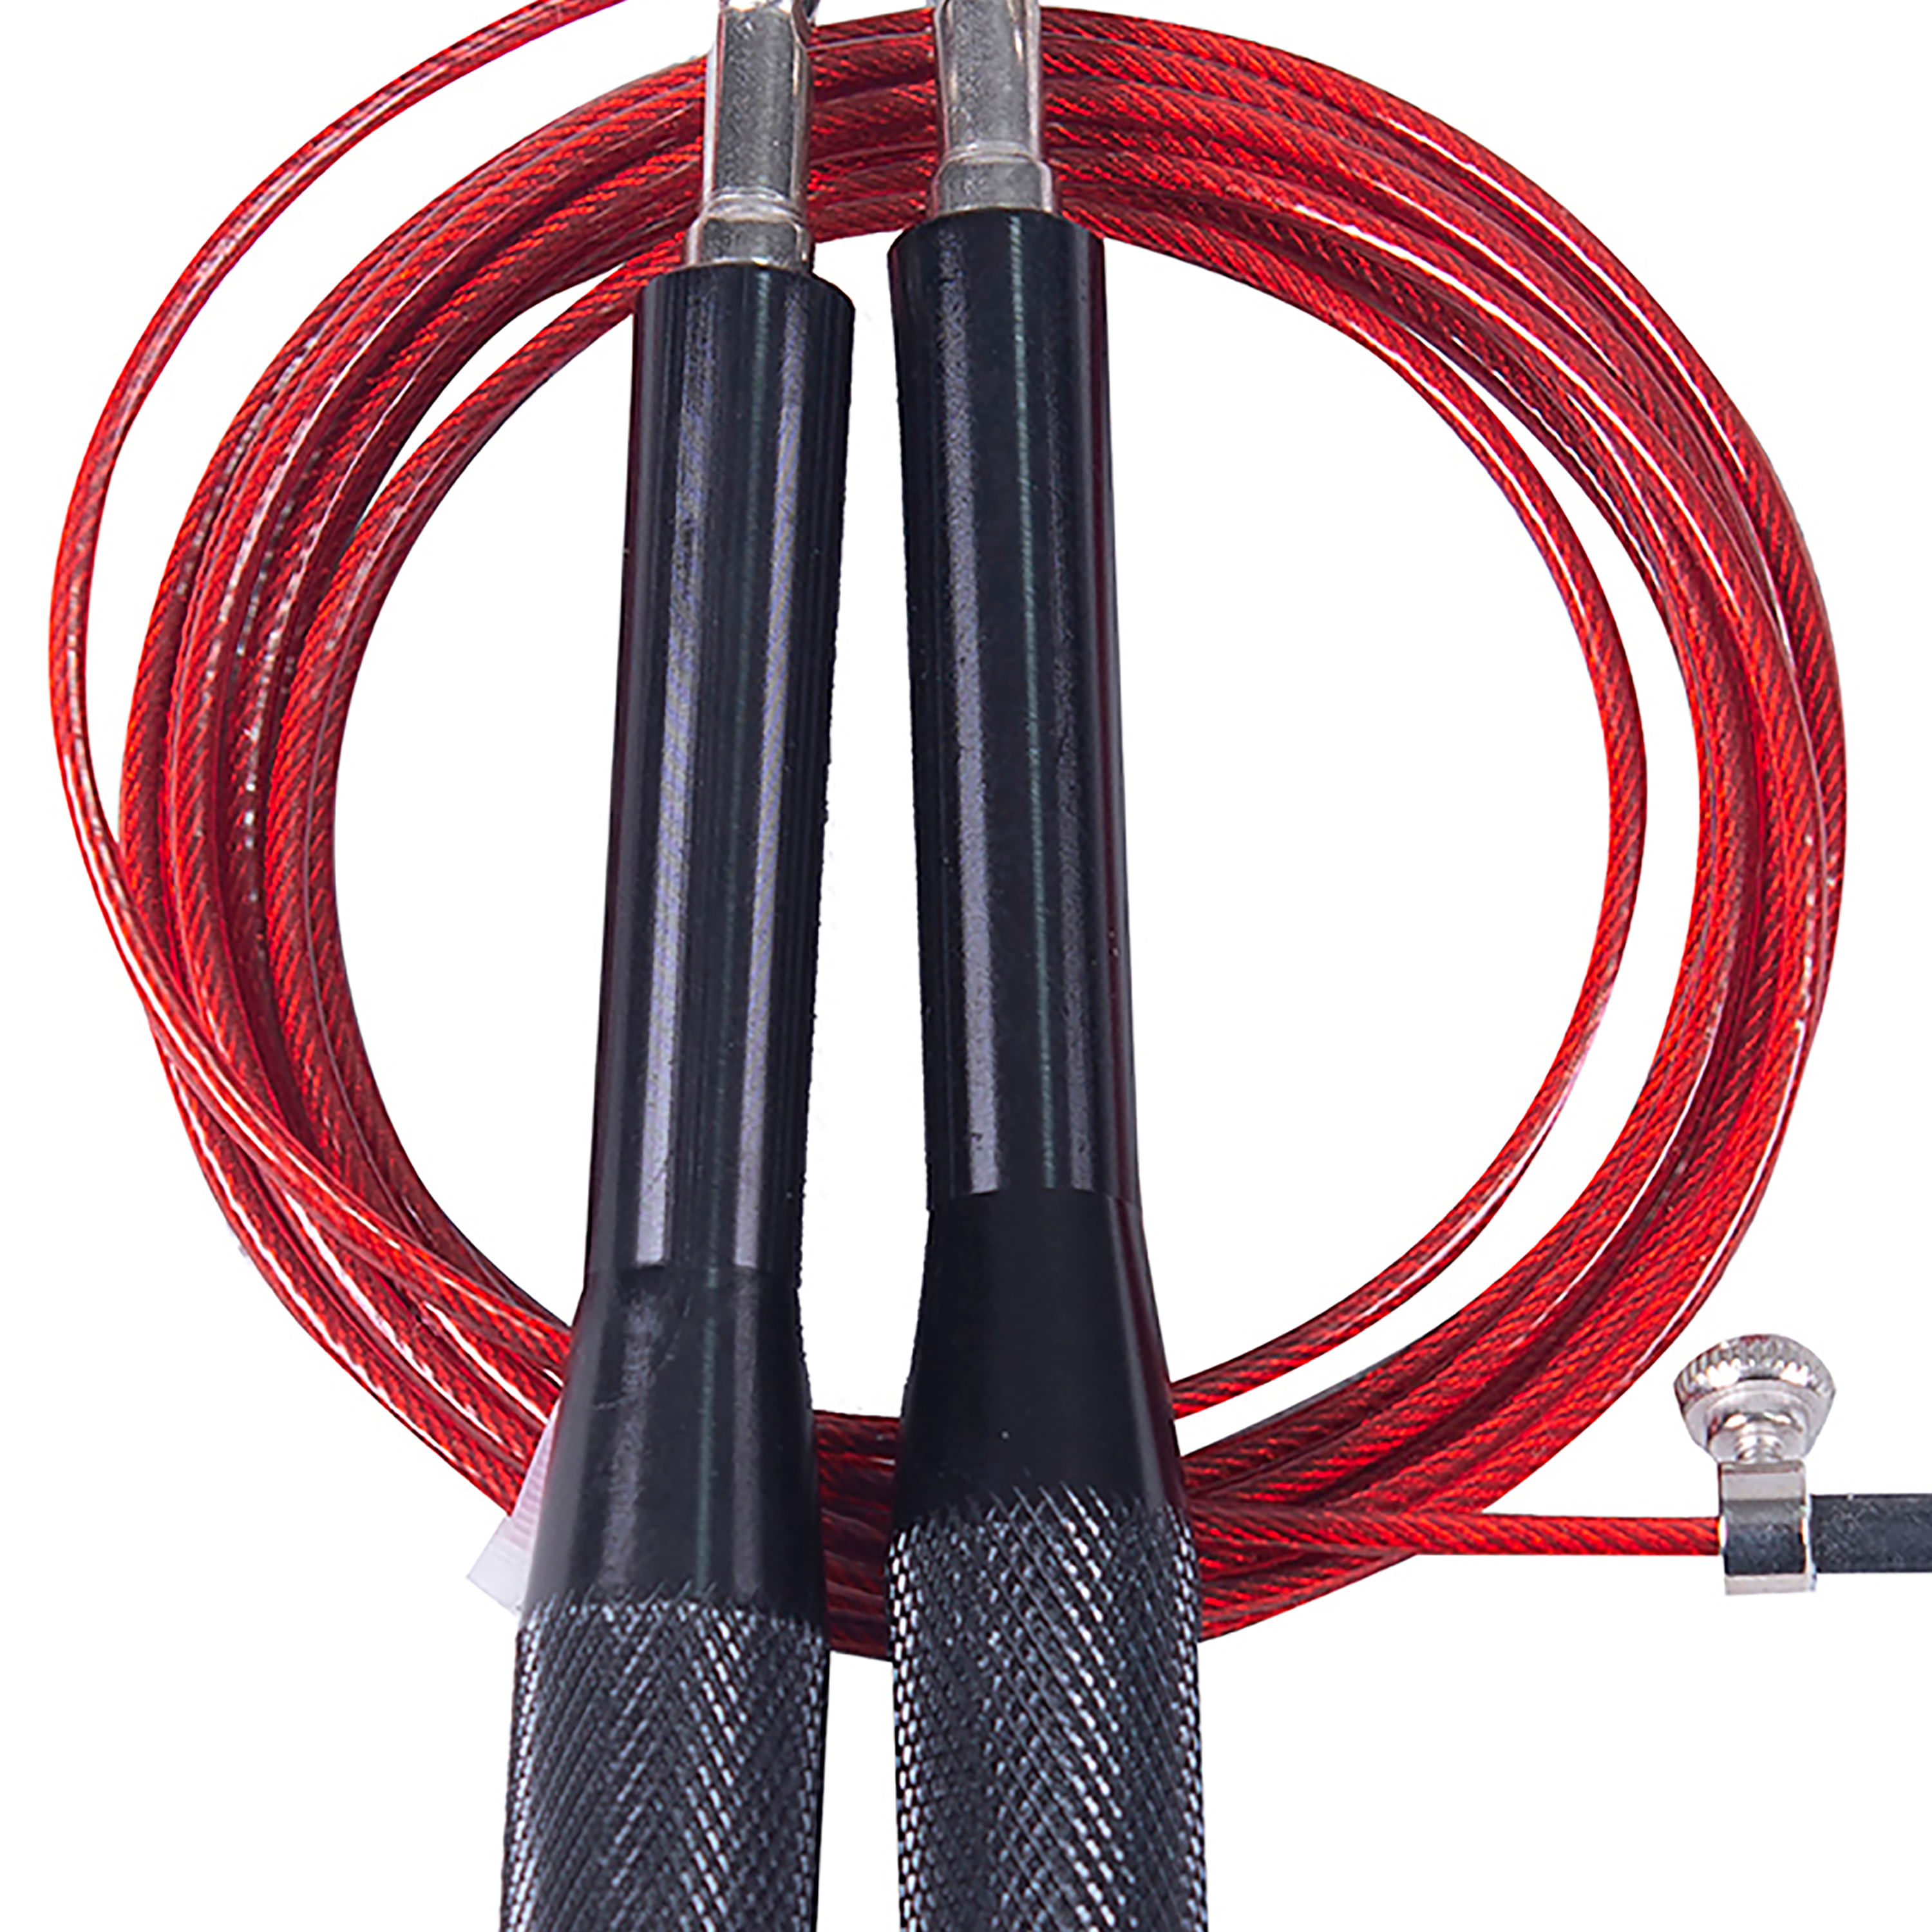 Comprar Cuerda Cable Para Saltar Athletic Works